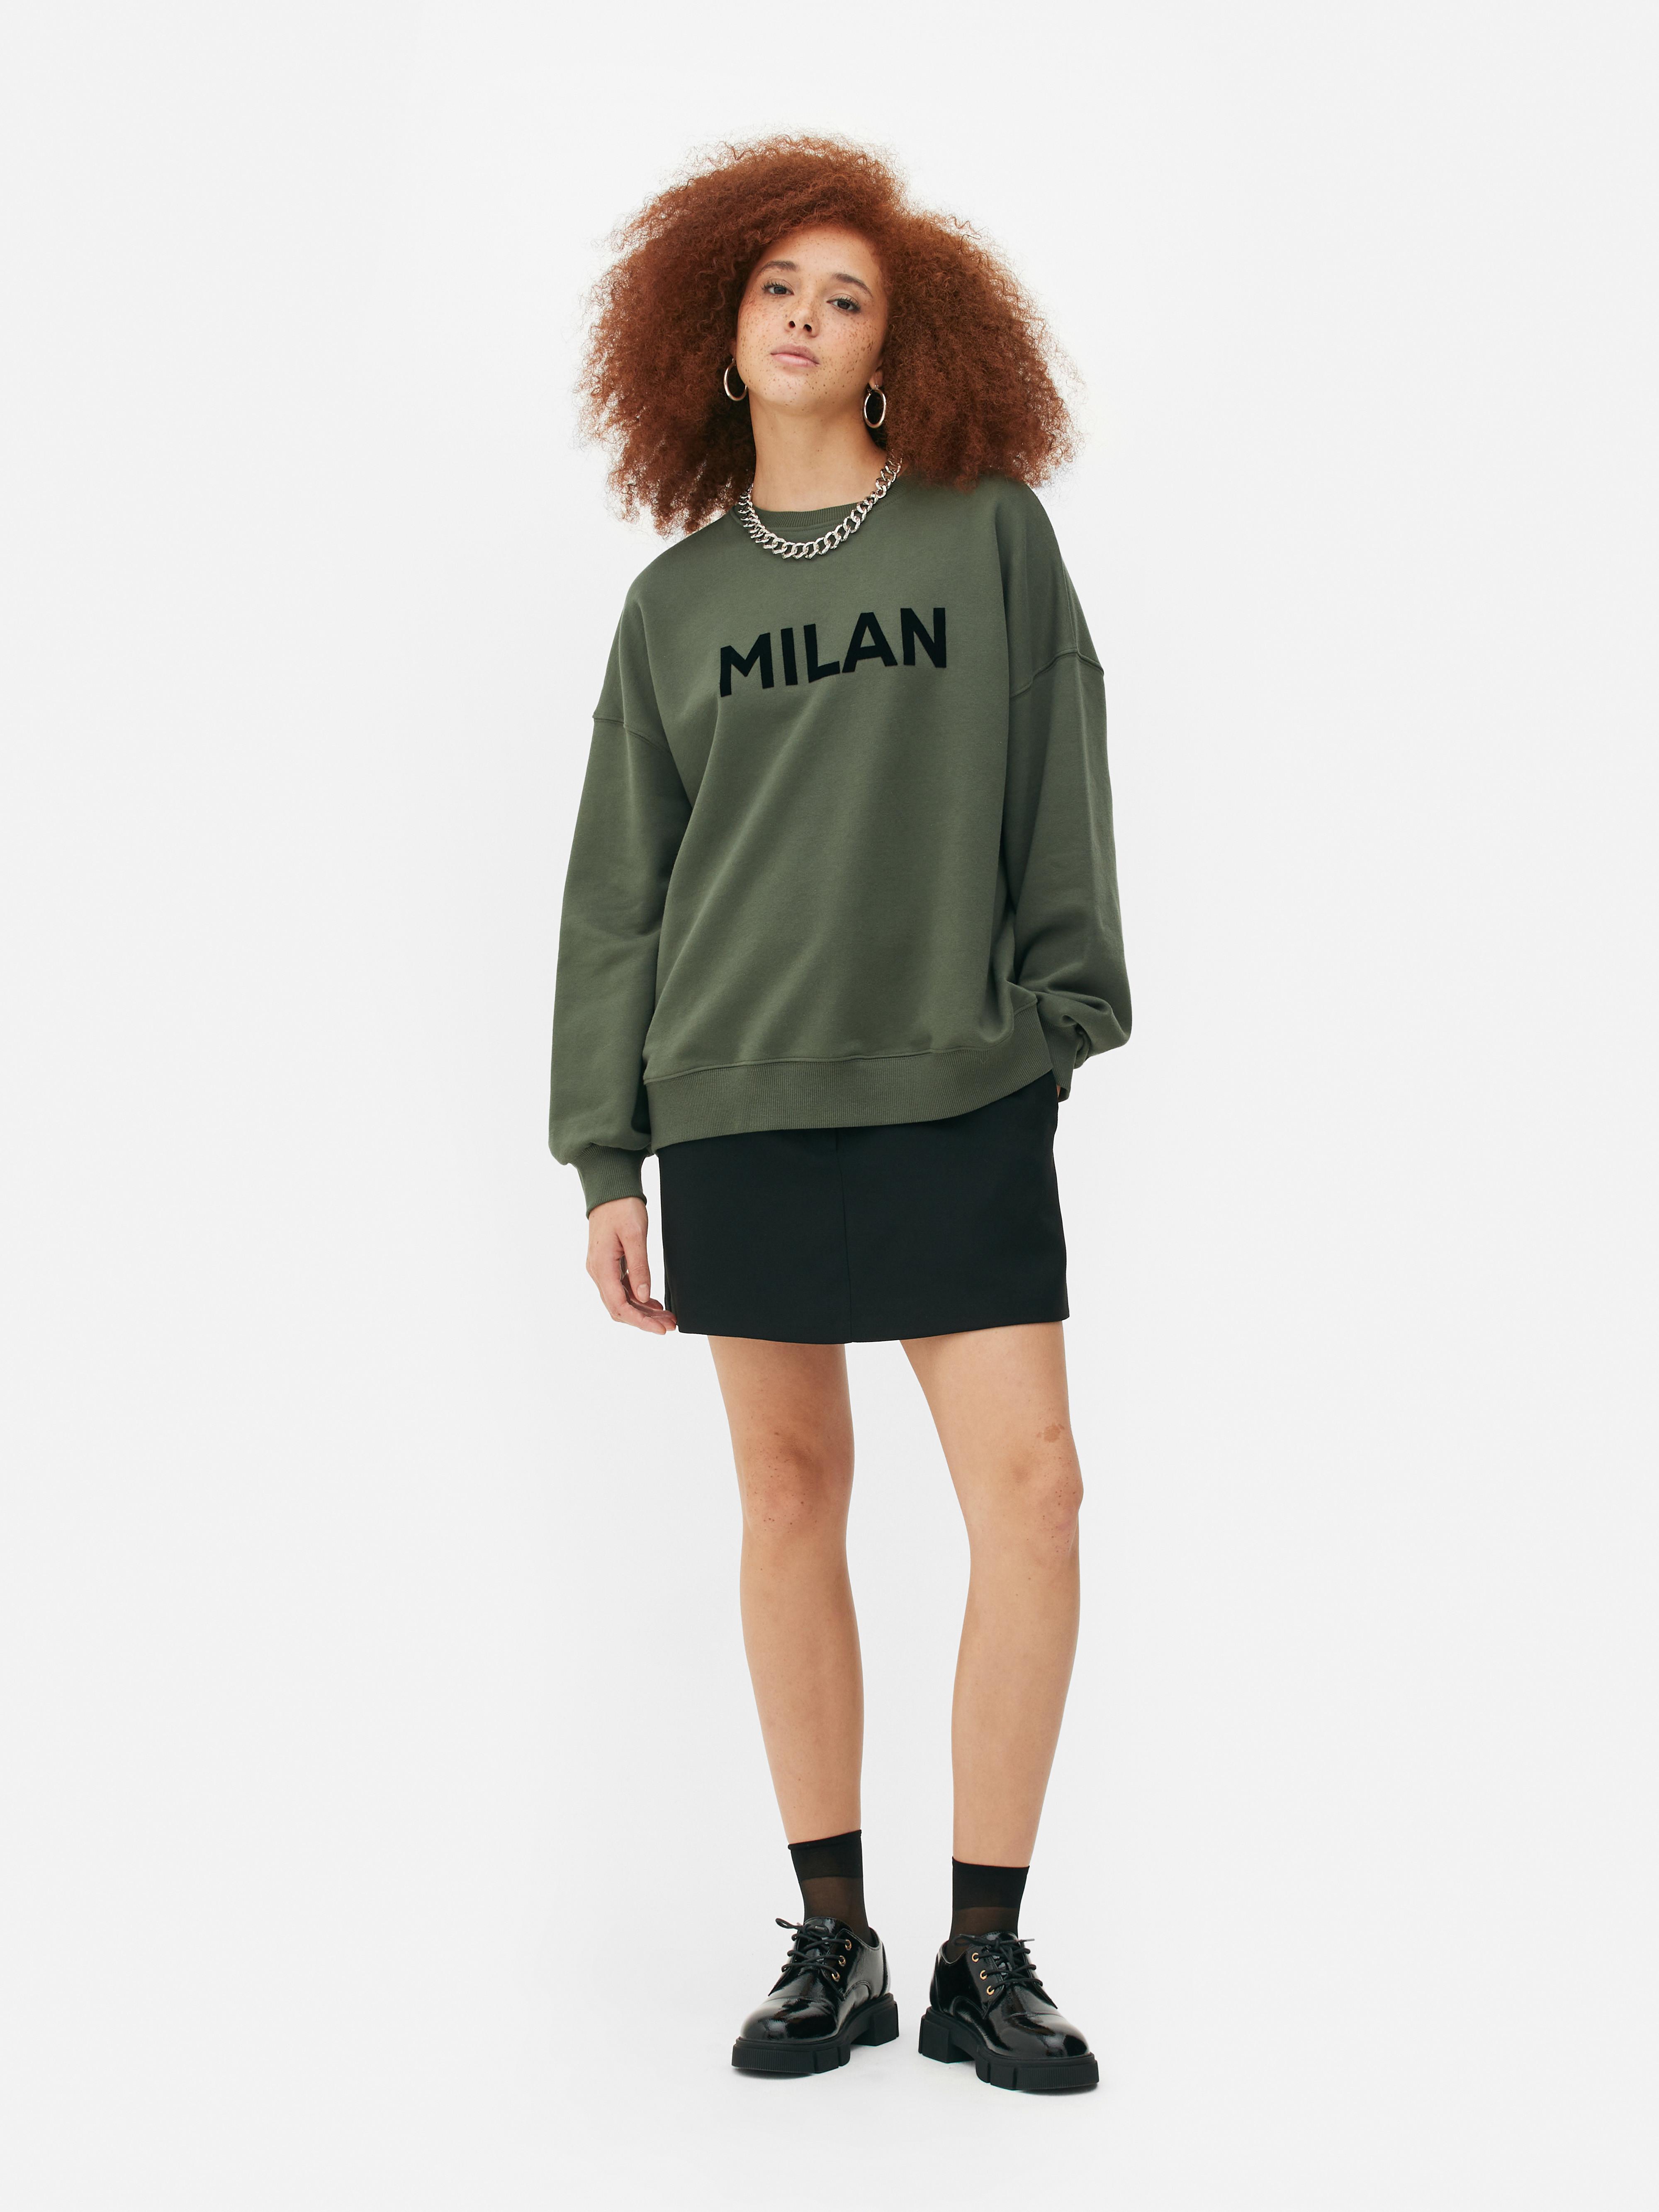 Milan Print Sweatshirt